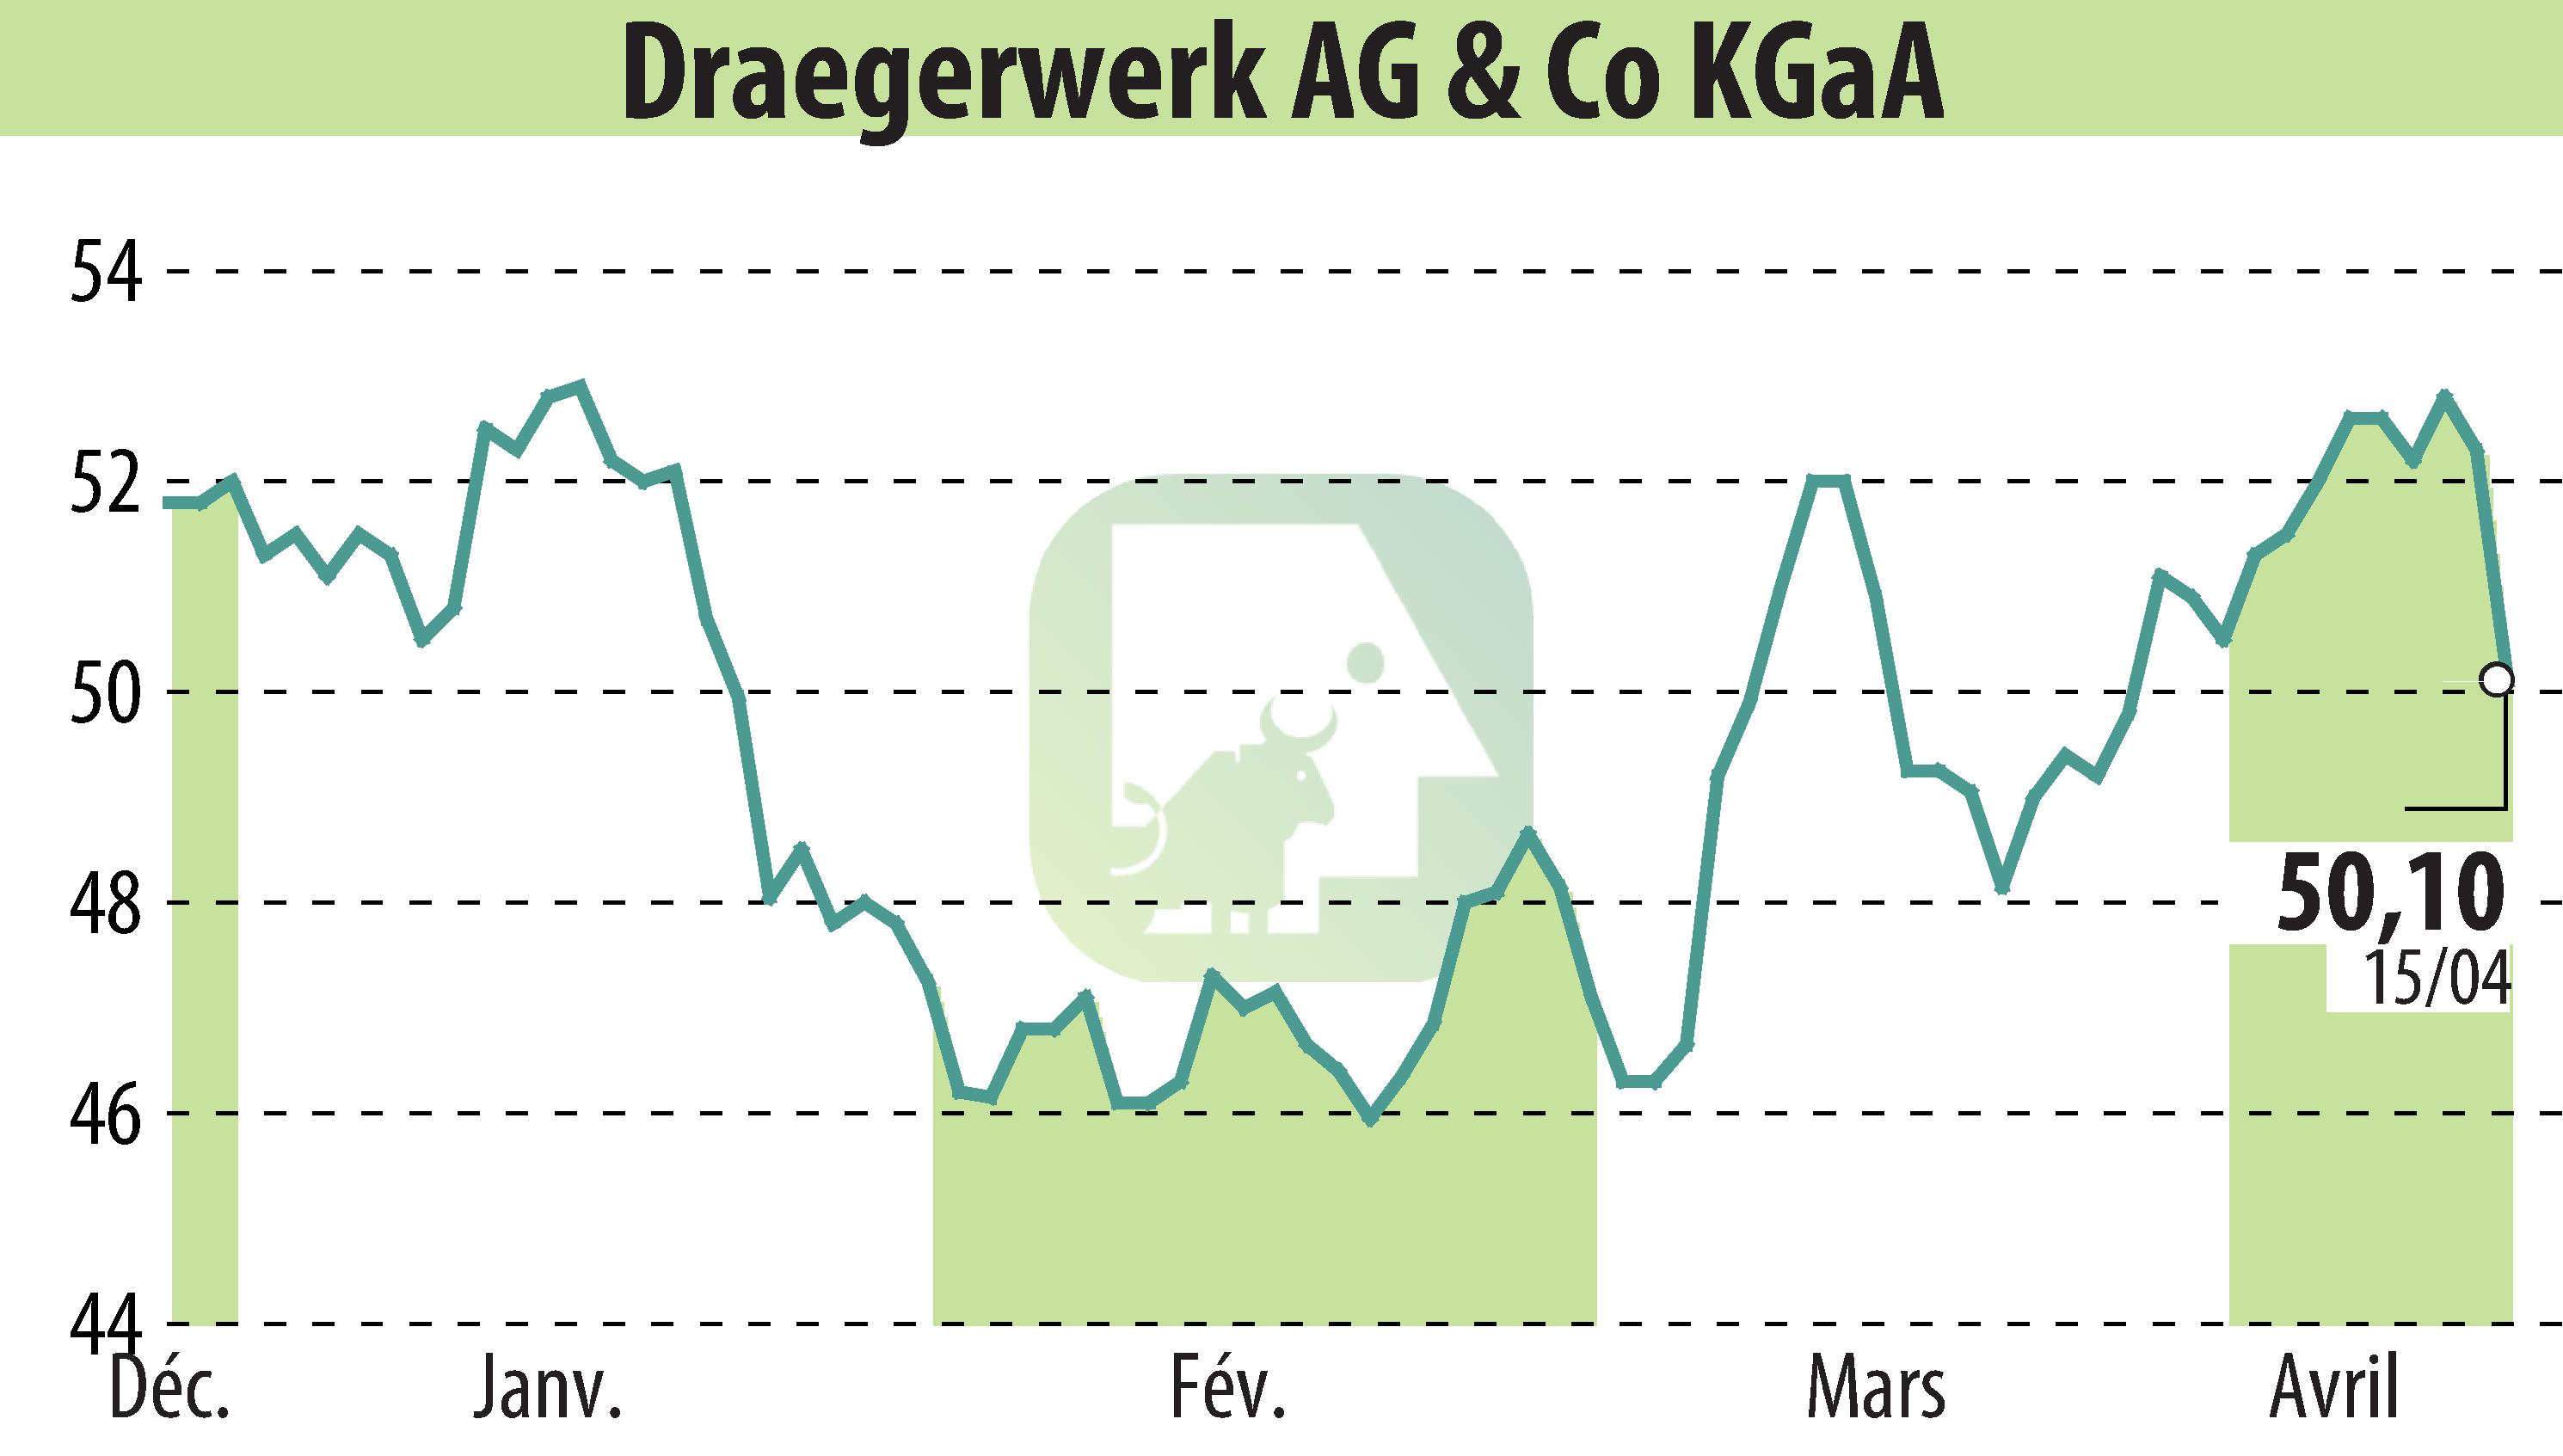 Graphique de l'évolution du cours de l'action Drägerwerk AG & Co. KGaA (EBR:DRW3).